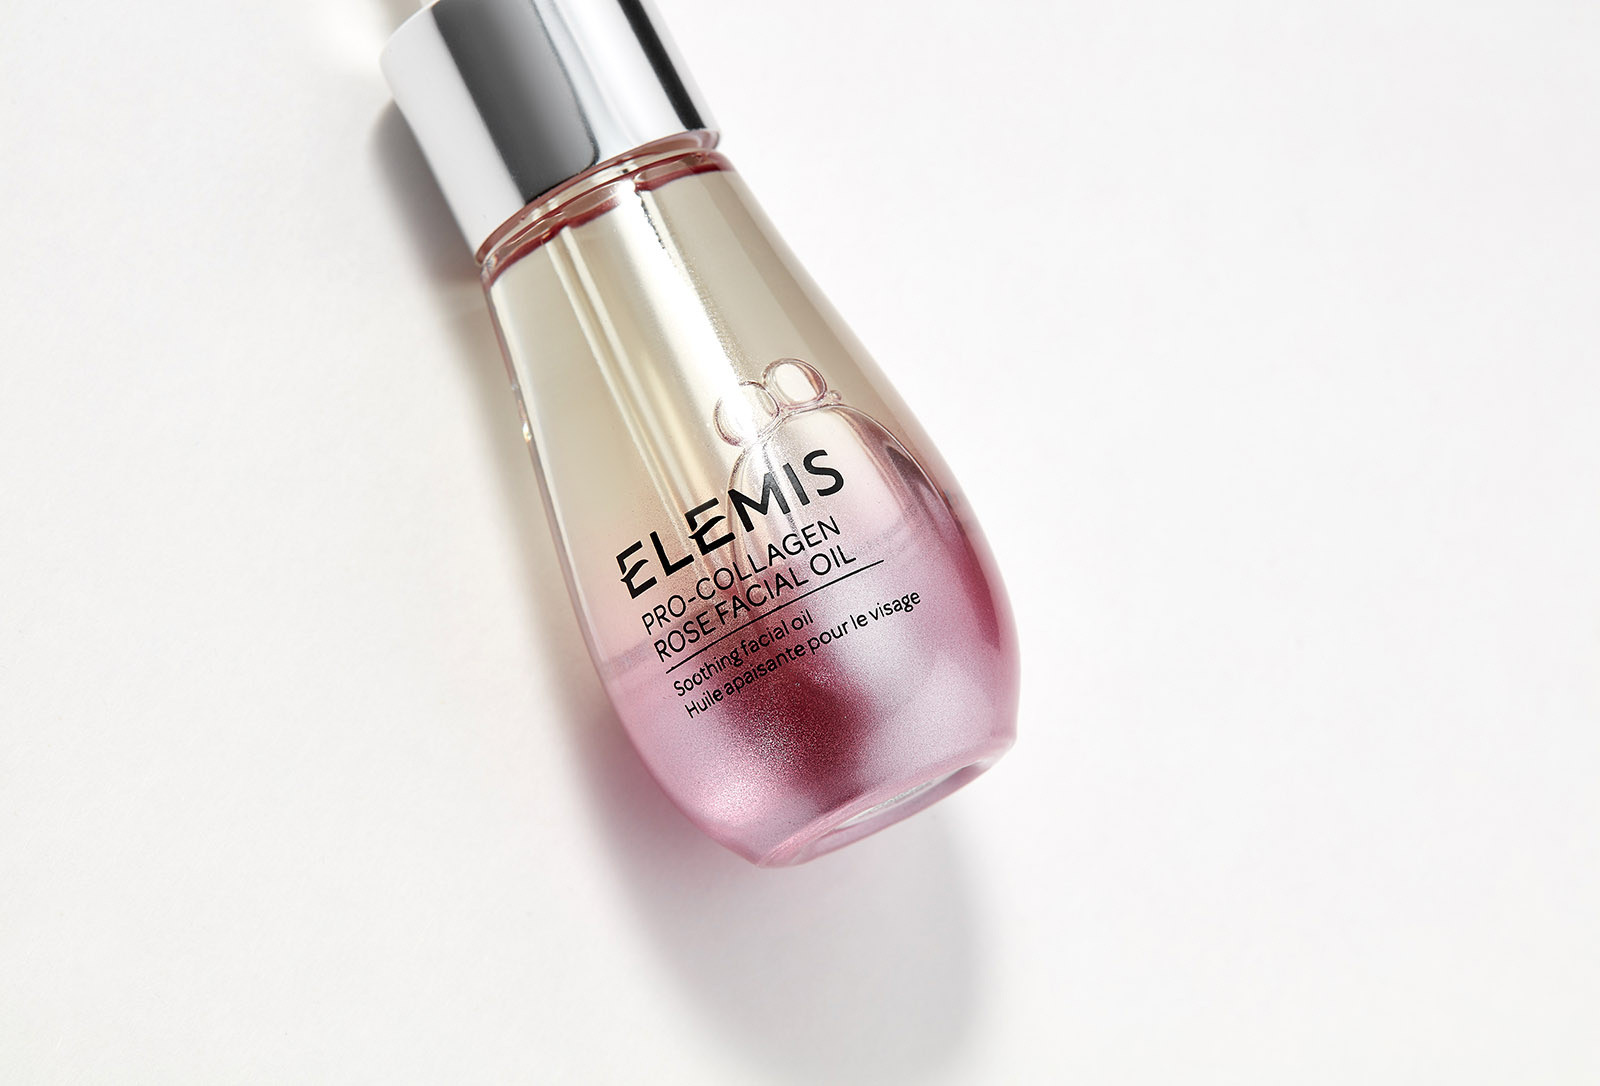 Олія для обличчя Elemis Pro-Collagen Rose Facial Oil